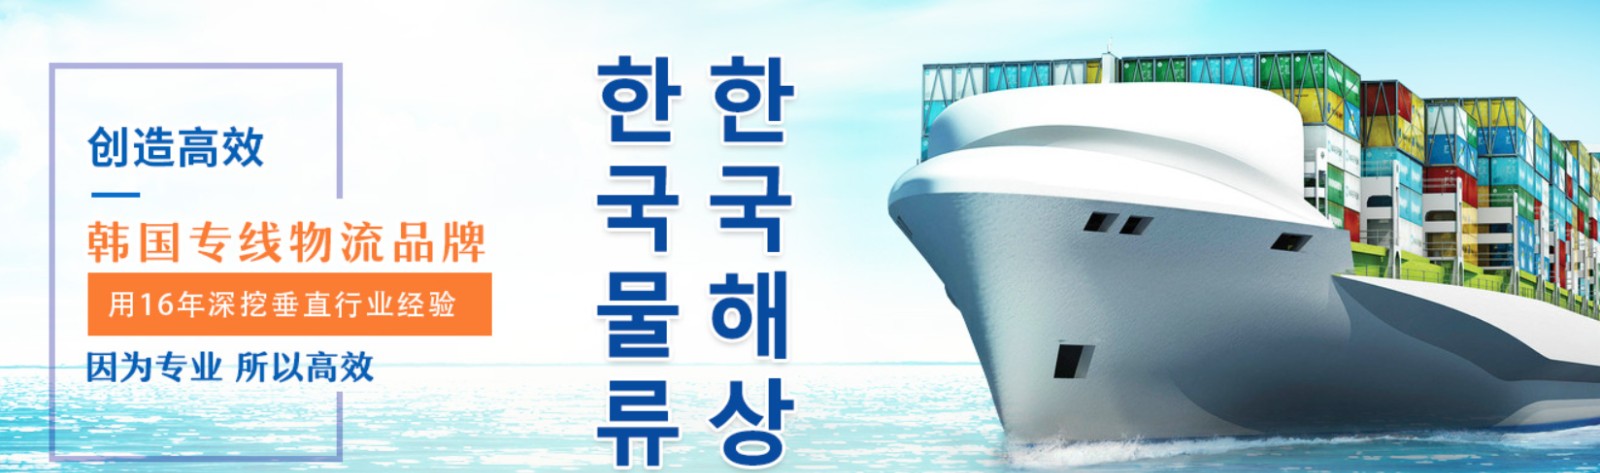 韩国货运代理 韩国物流公司 韩国亚马逊FBA头程海运 韩国空运专线国际物流有限公司